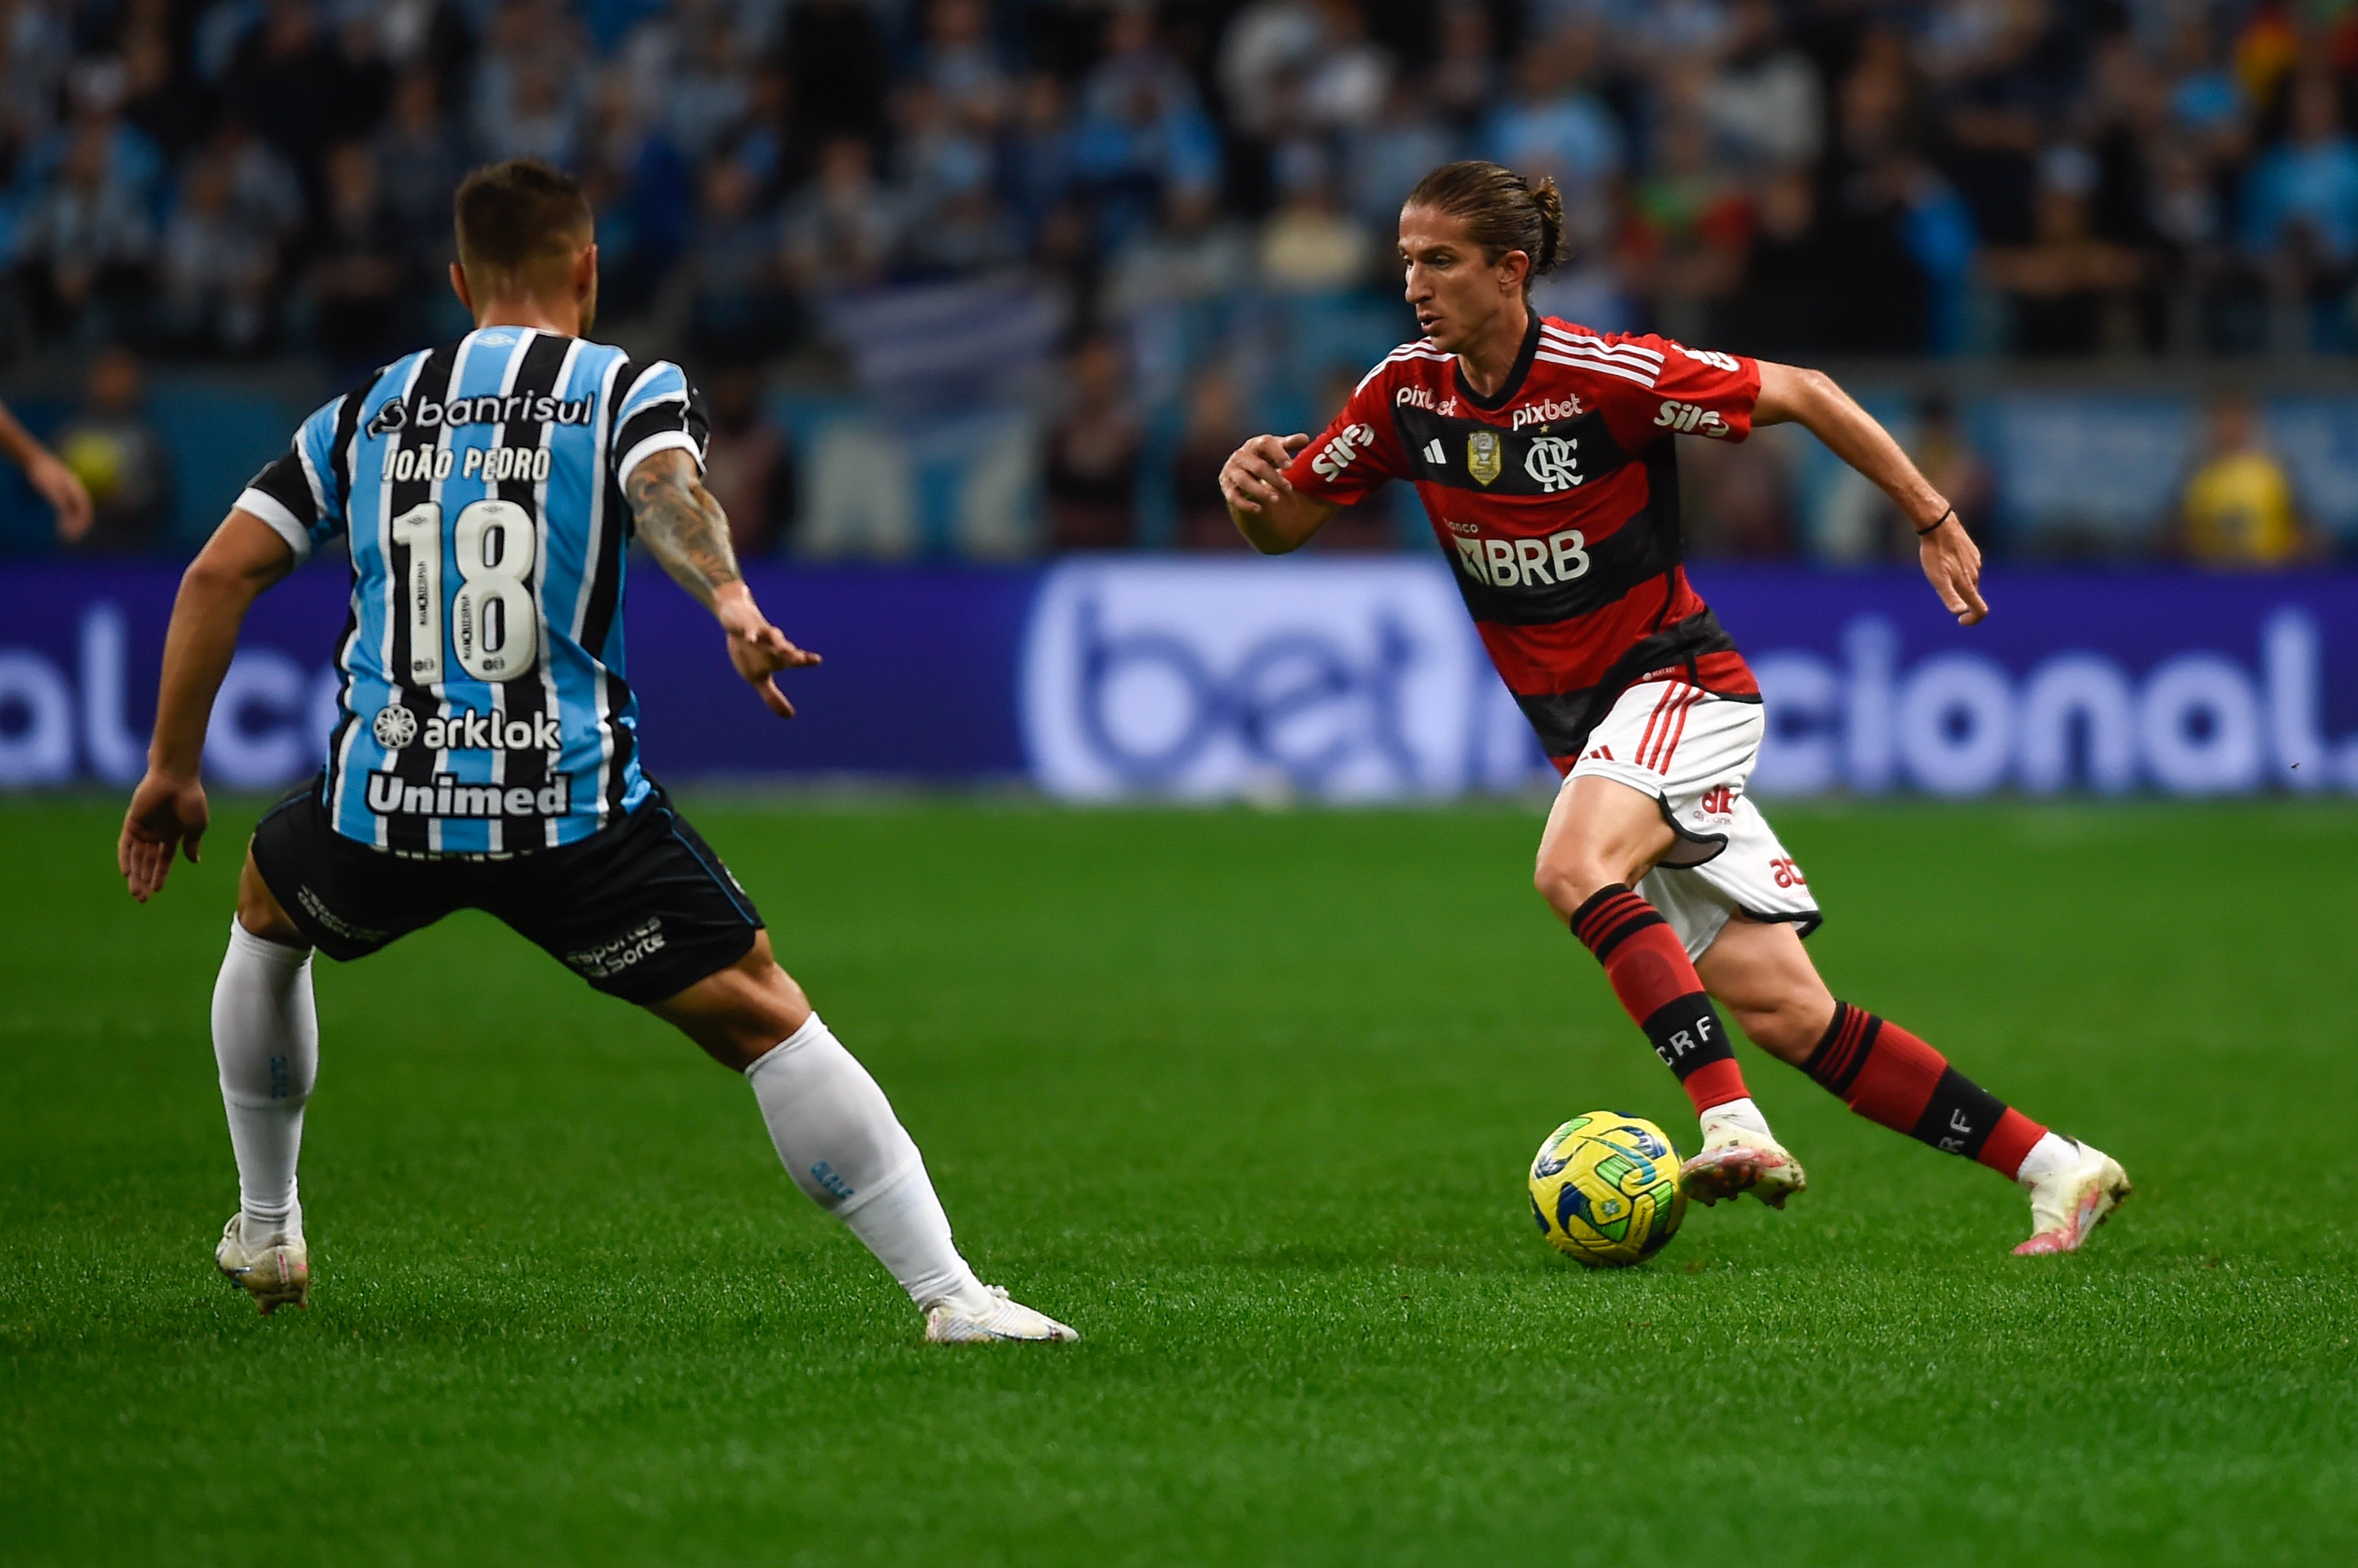 O Grêmio trata todos seus jogos com seriedade, diz vice de futebol sobre  derrota para o Flamengo